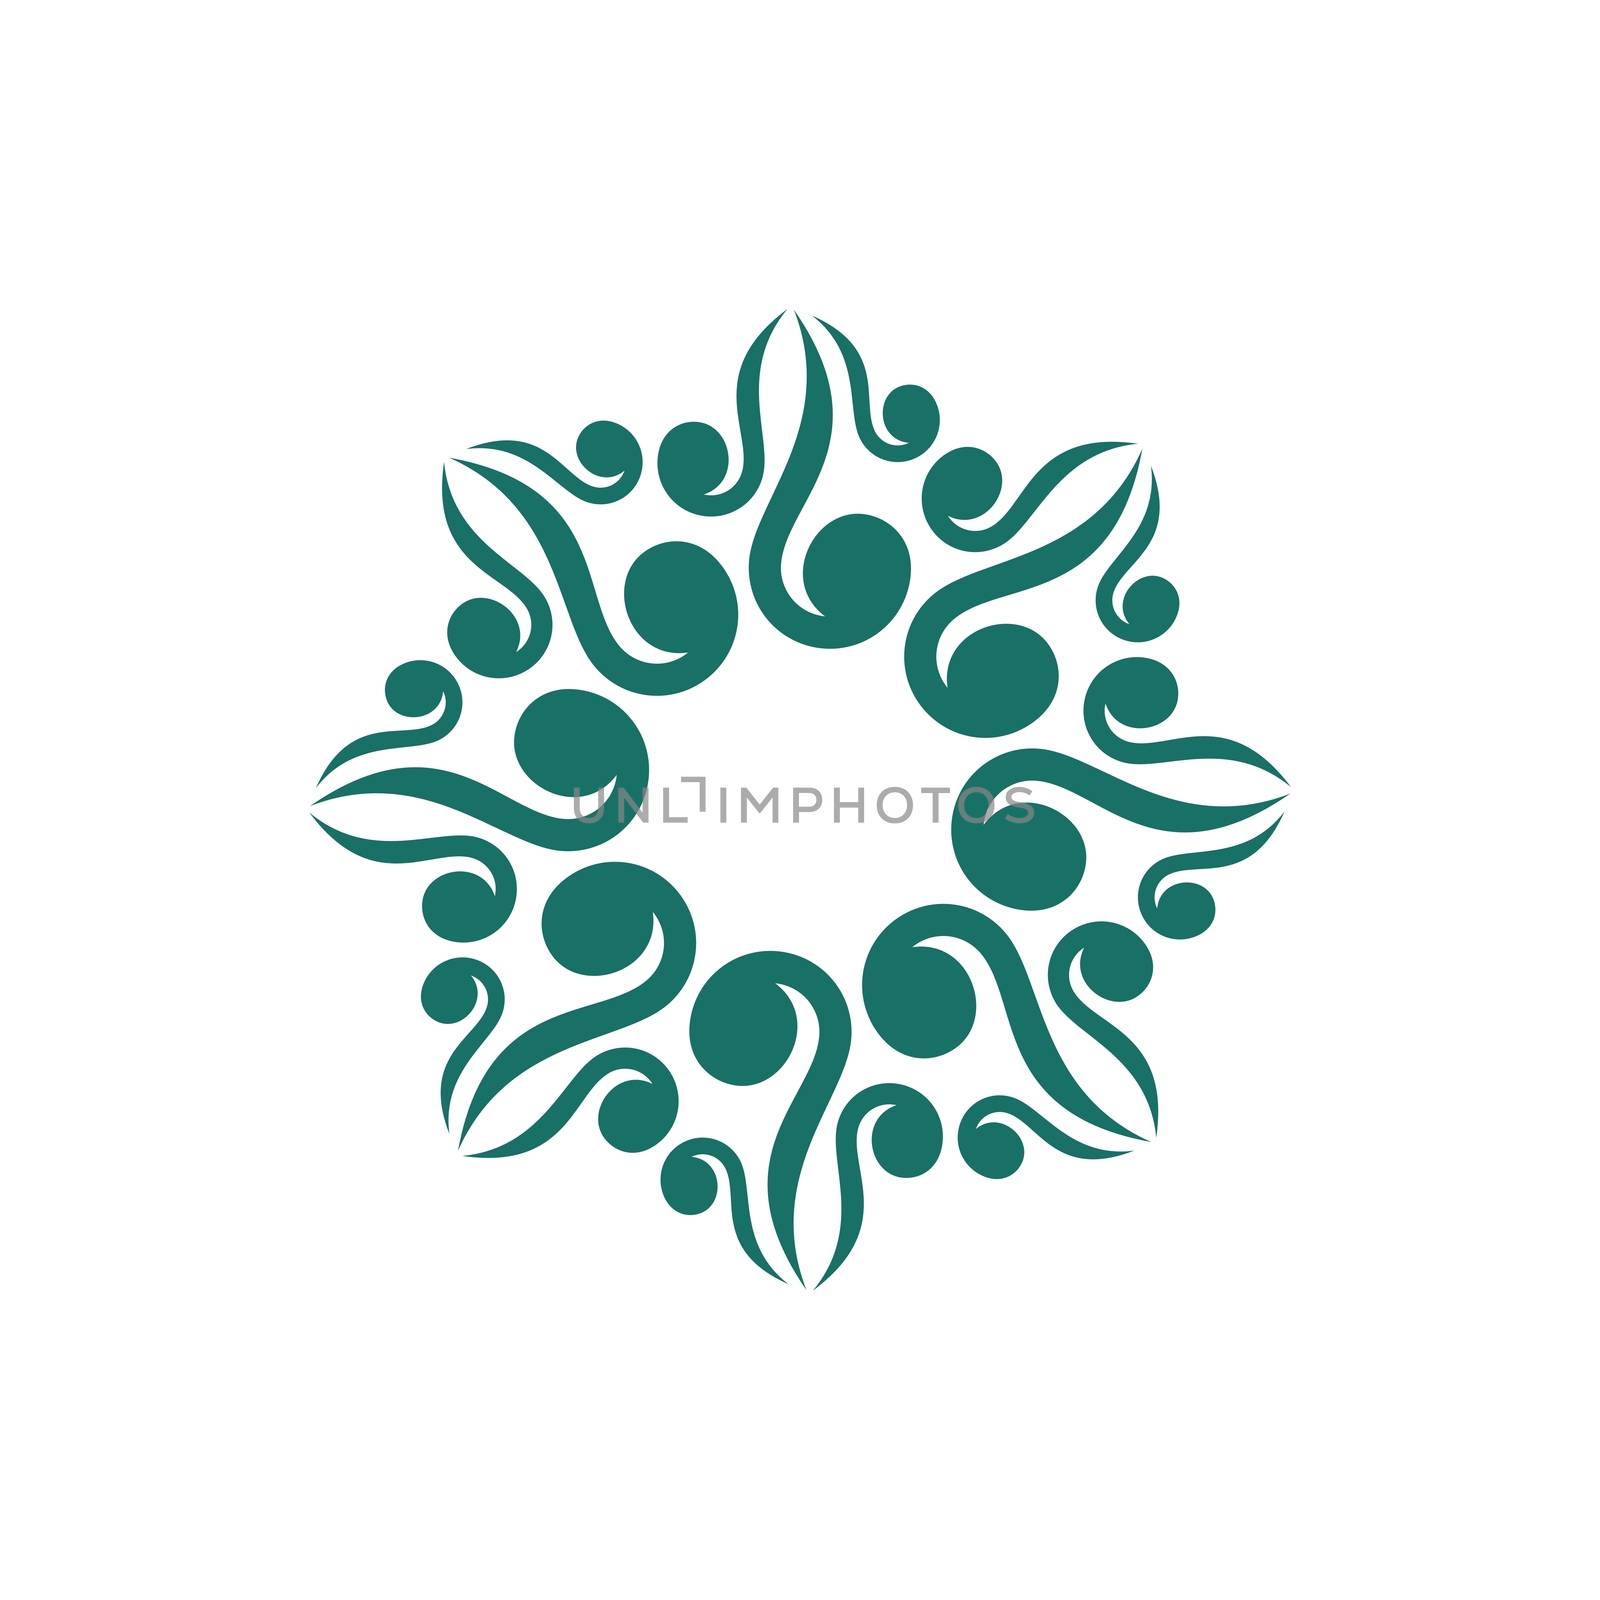 Green Ornamental Flower or Star Logo Template Illustration Design. Vector EPS 10.